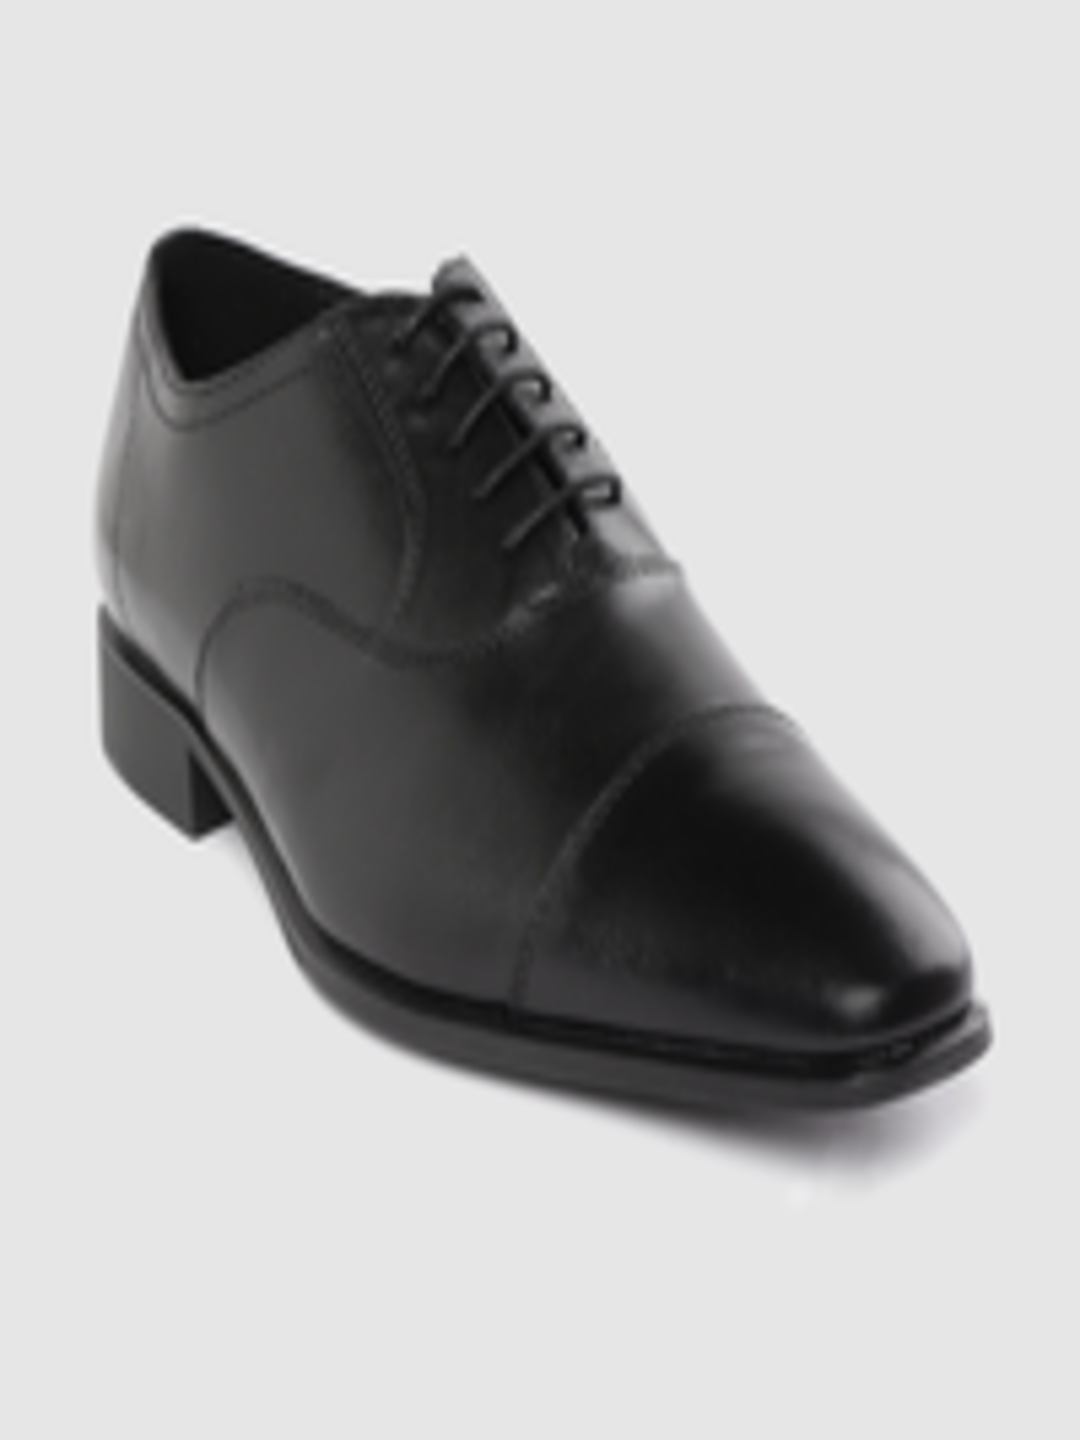 Buy Geox Men Black Solid Leather Formal Oxfords - Formal Shoes for Men ...